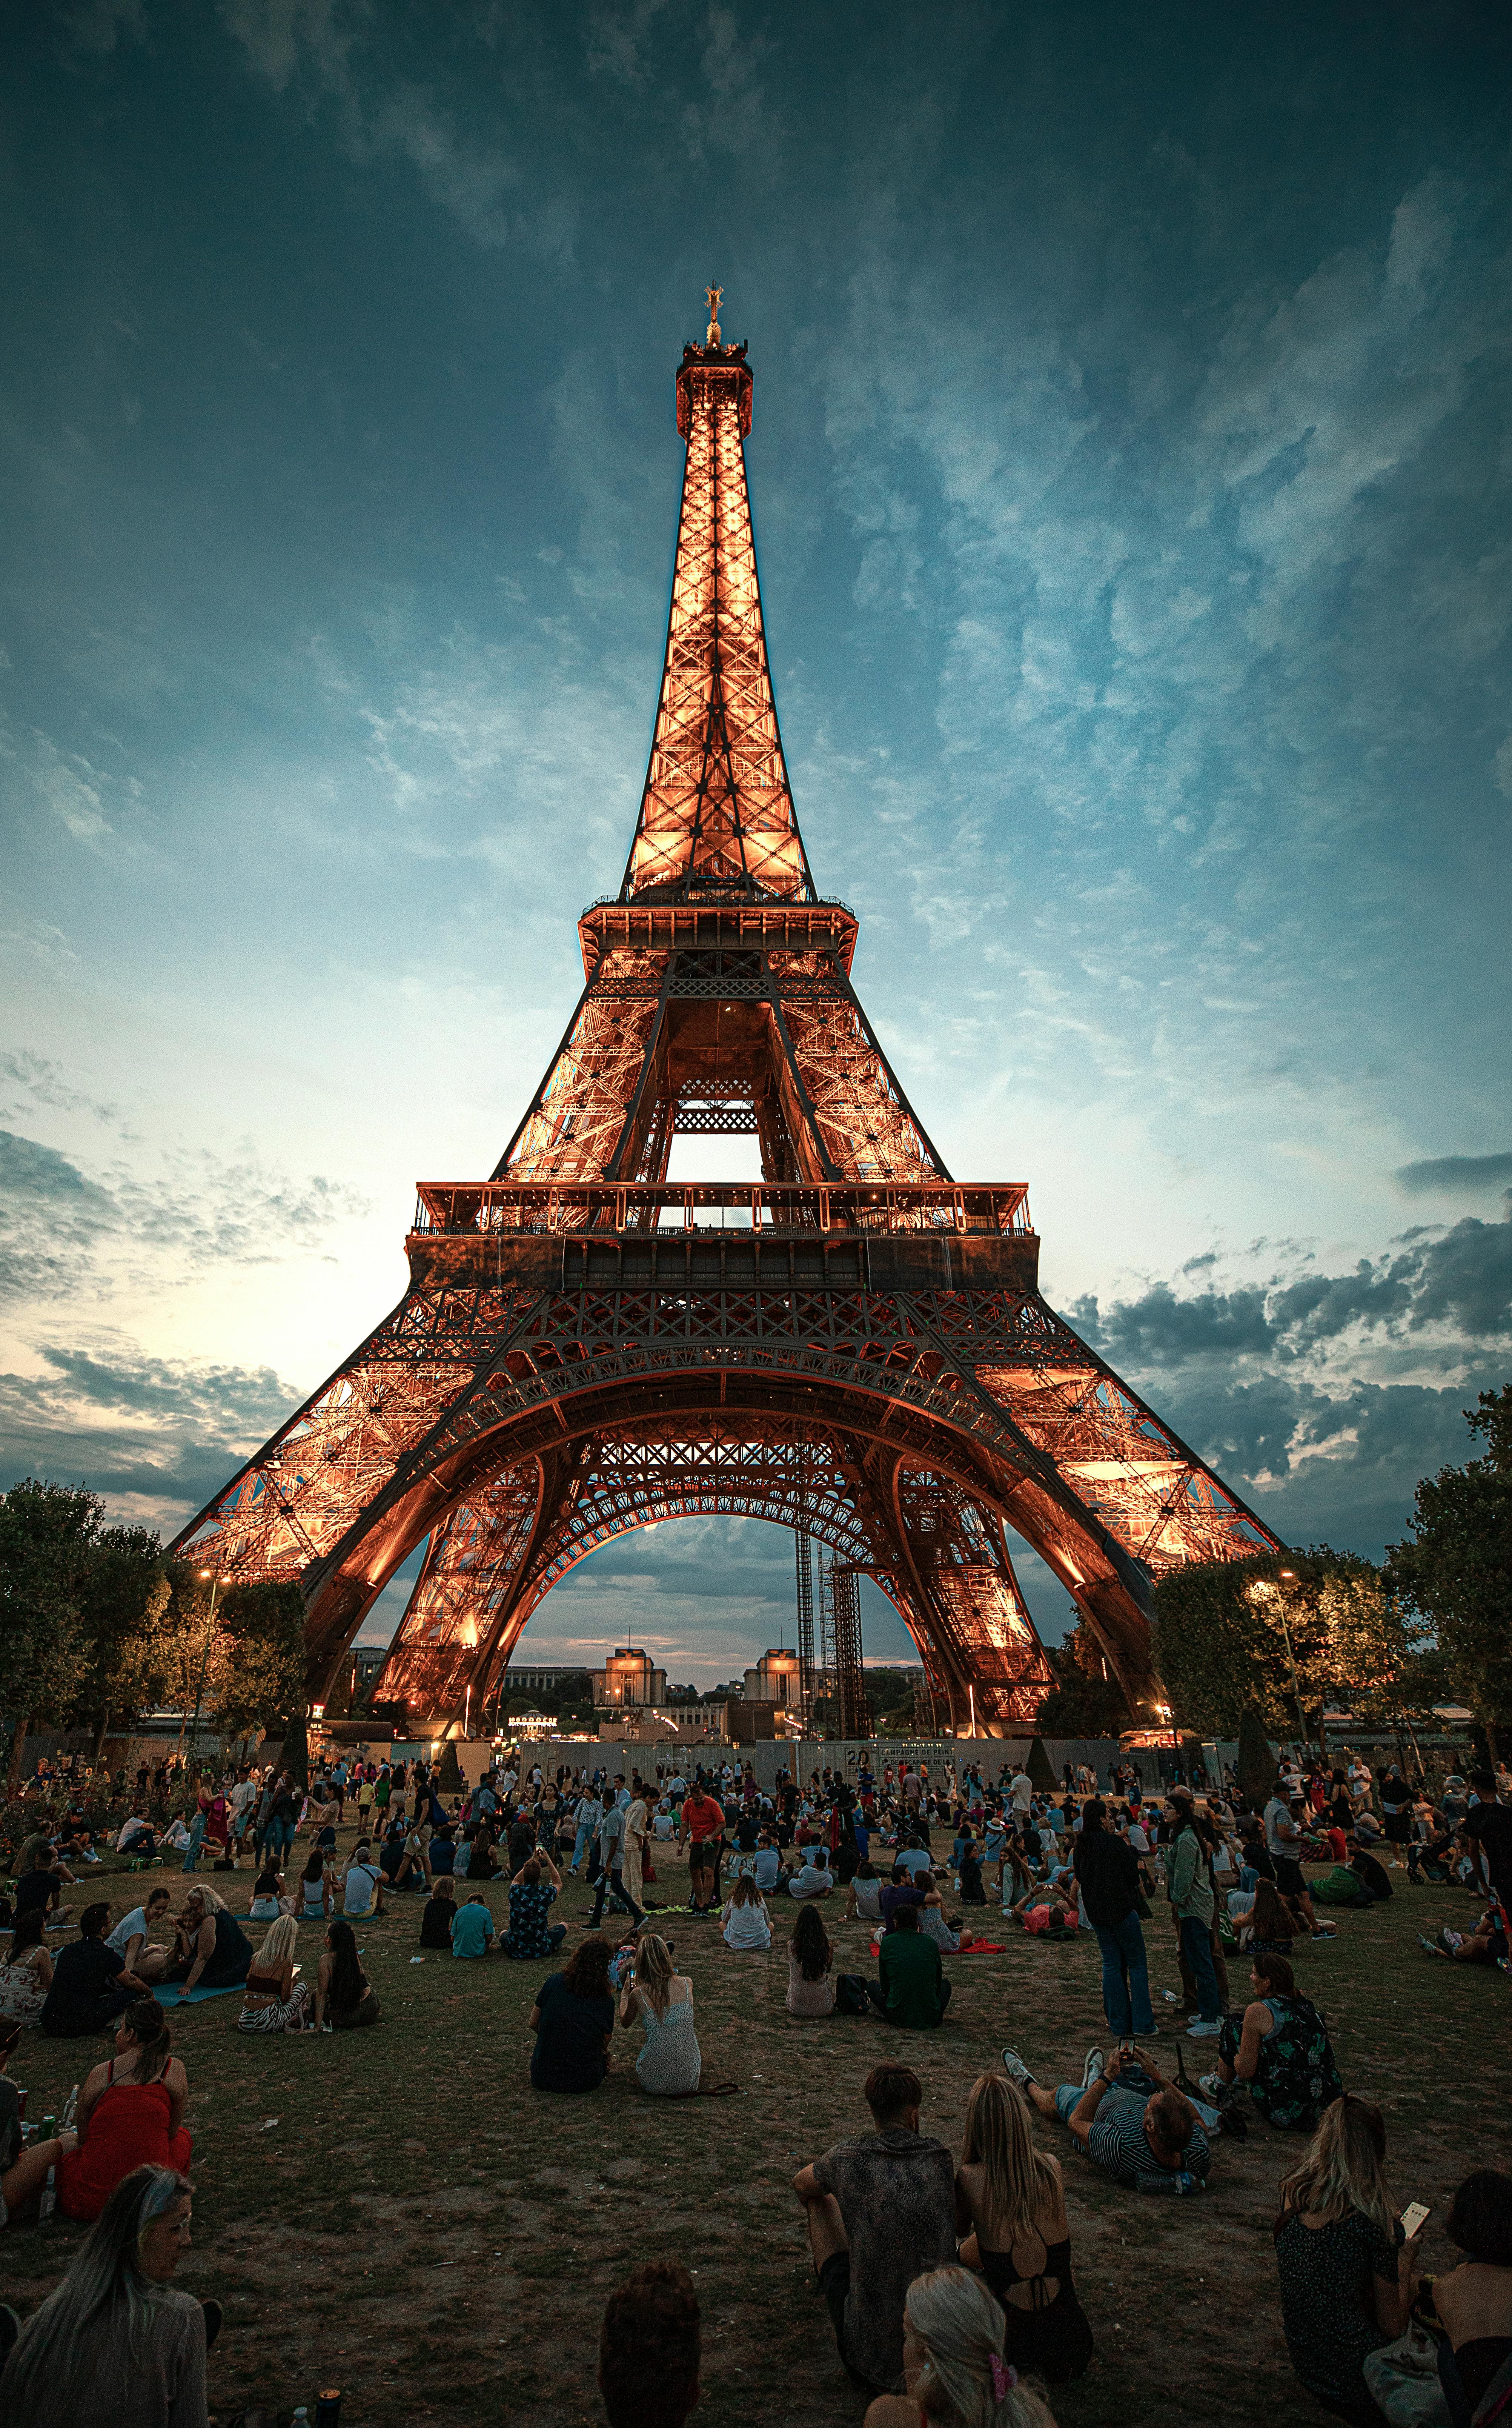 100.000+ ảnh đẹp nhất về Hoàng Hôn Paris · Tải xuống miễn phí 100% · Ảnh có  sẵn của Pexels